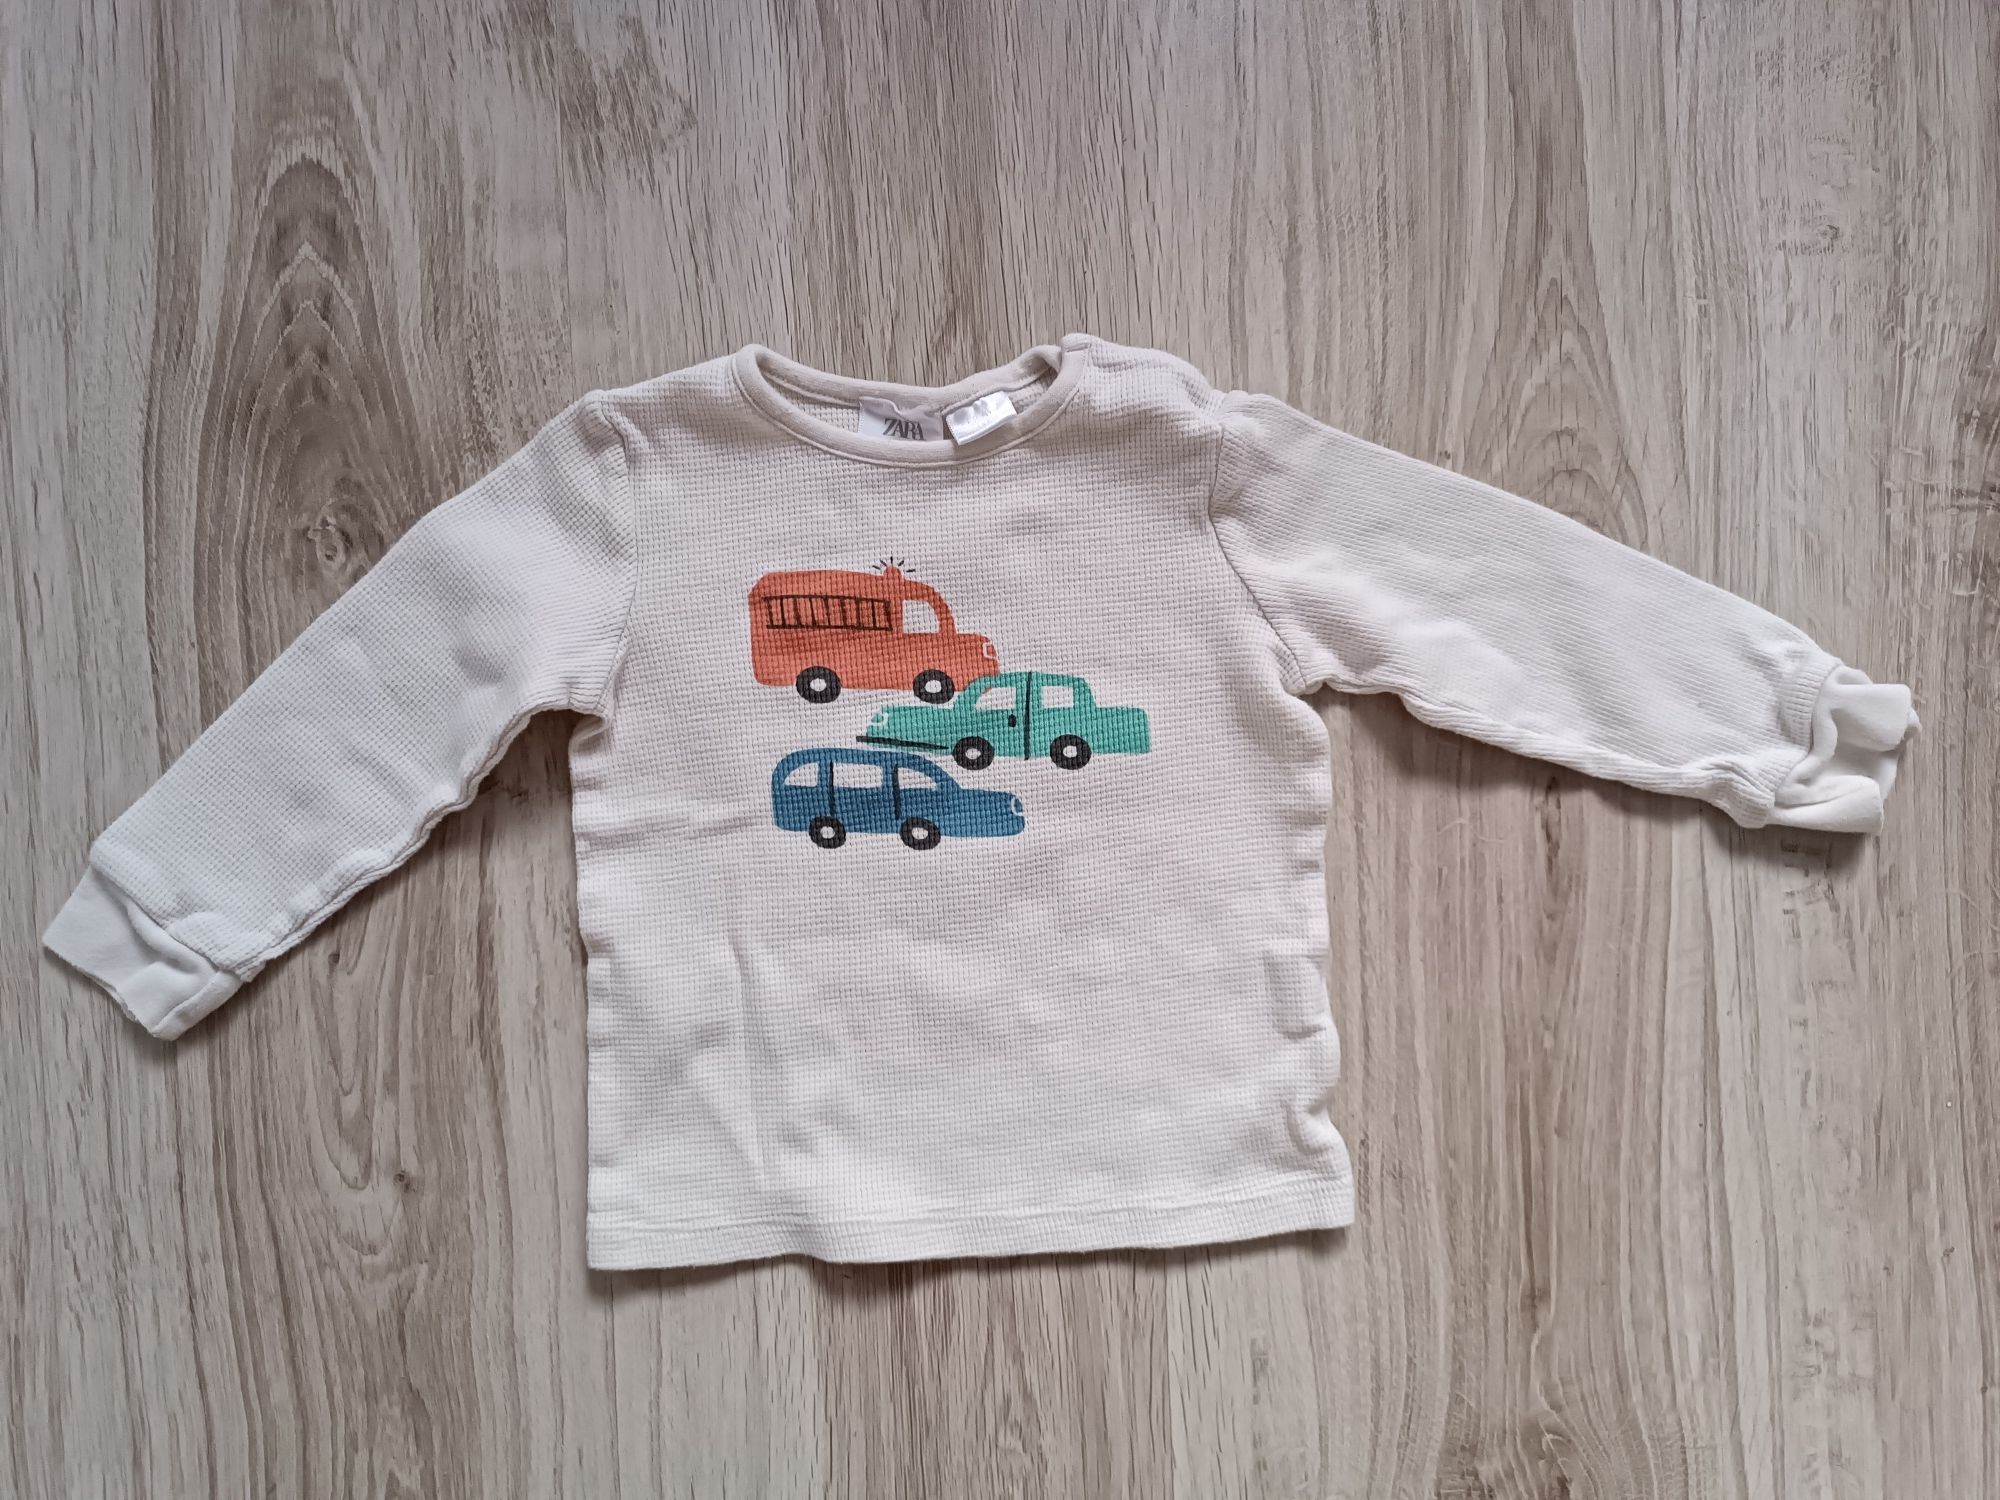 Bluzka dla chłopca beżowa z autami Zara 98